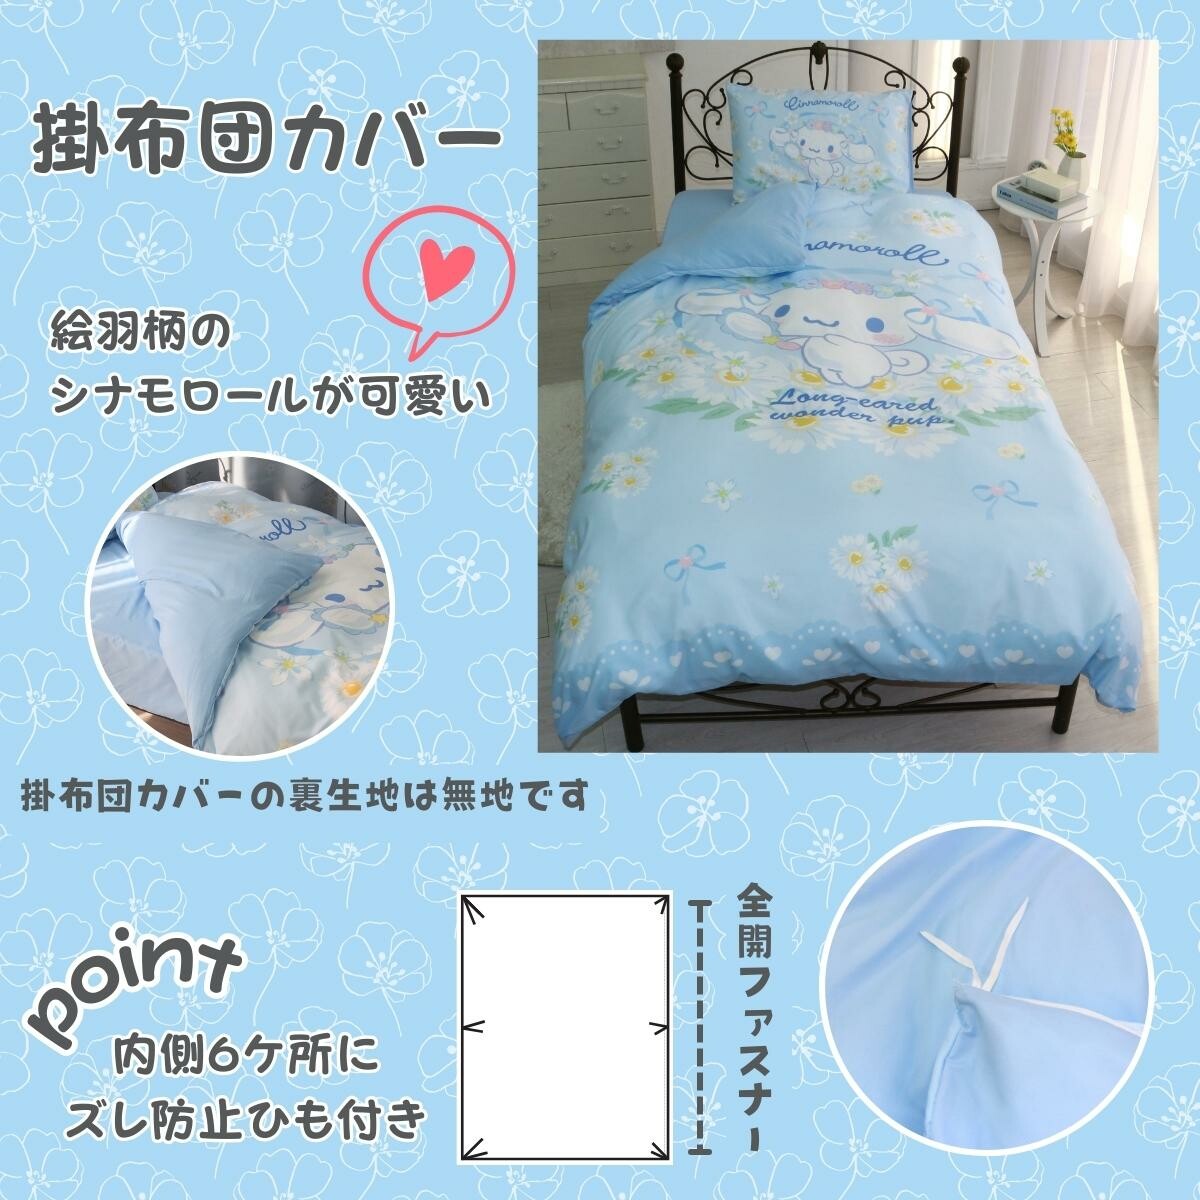 Sanrio Cinnamoroll 單人羽絨床單3件裝 [預計發售2023年12月上旬]